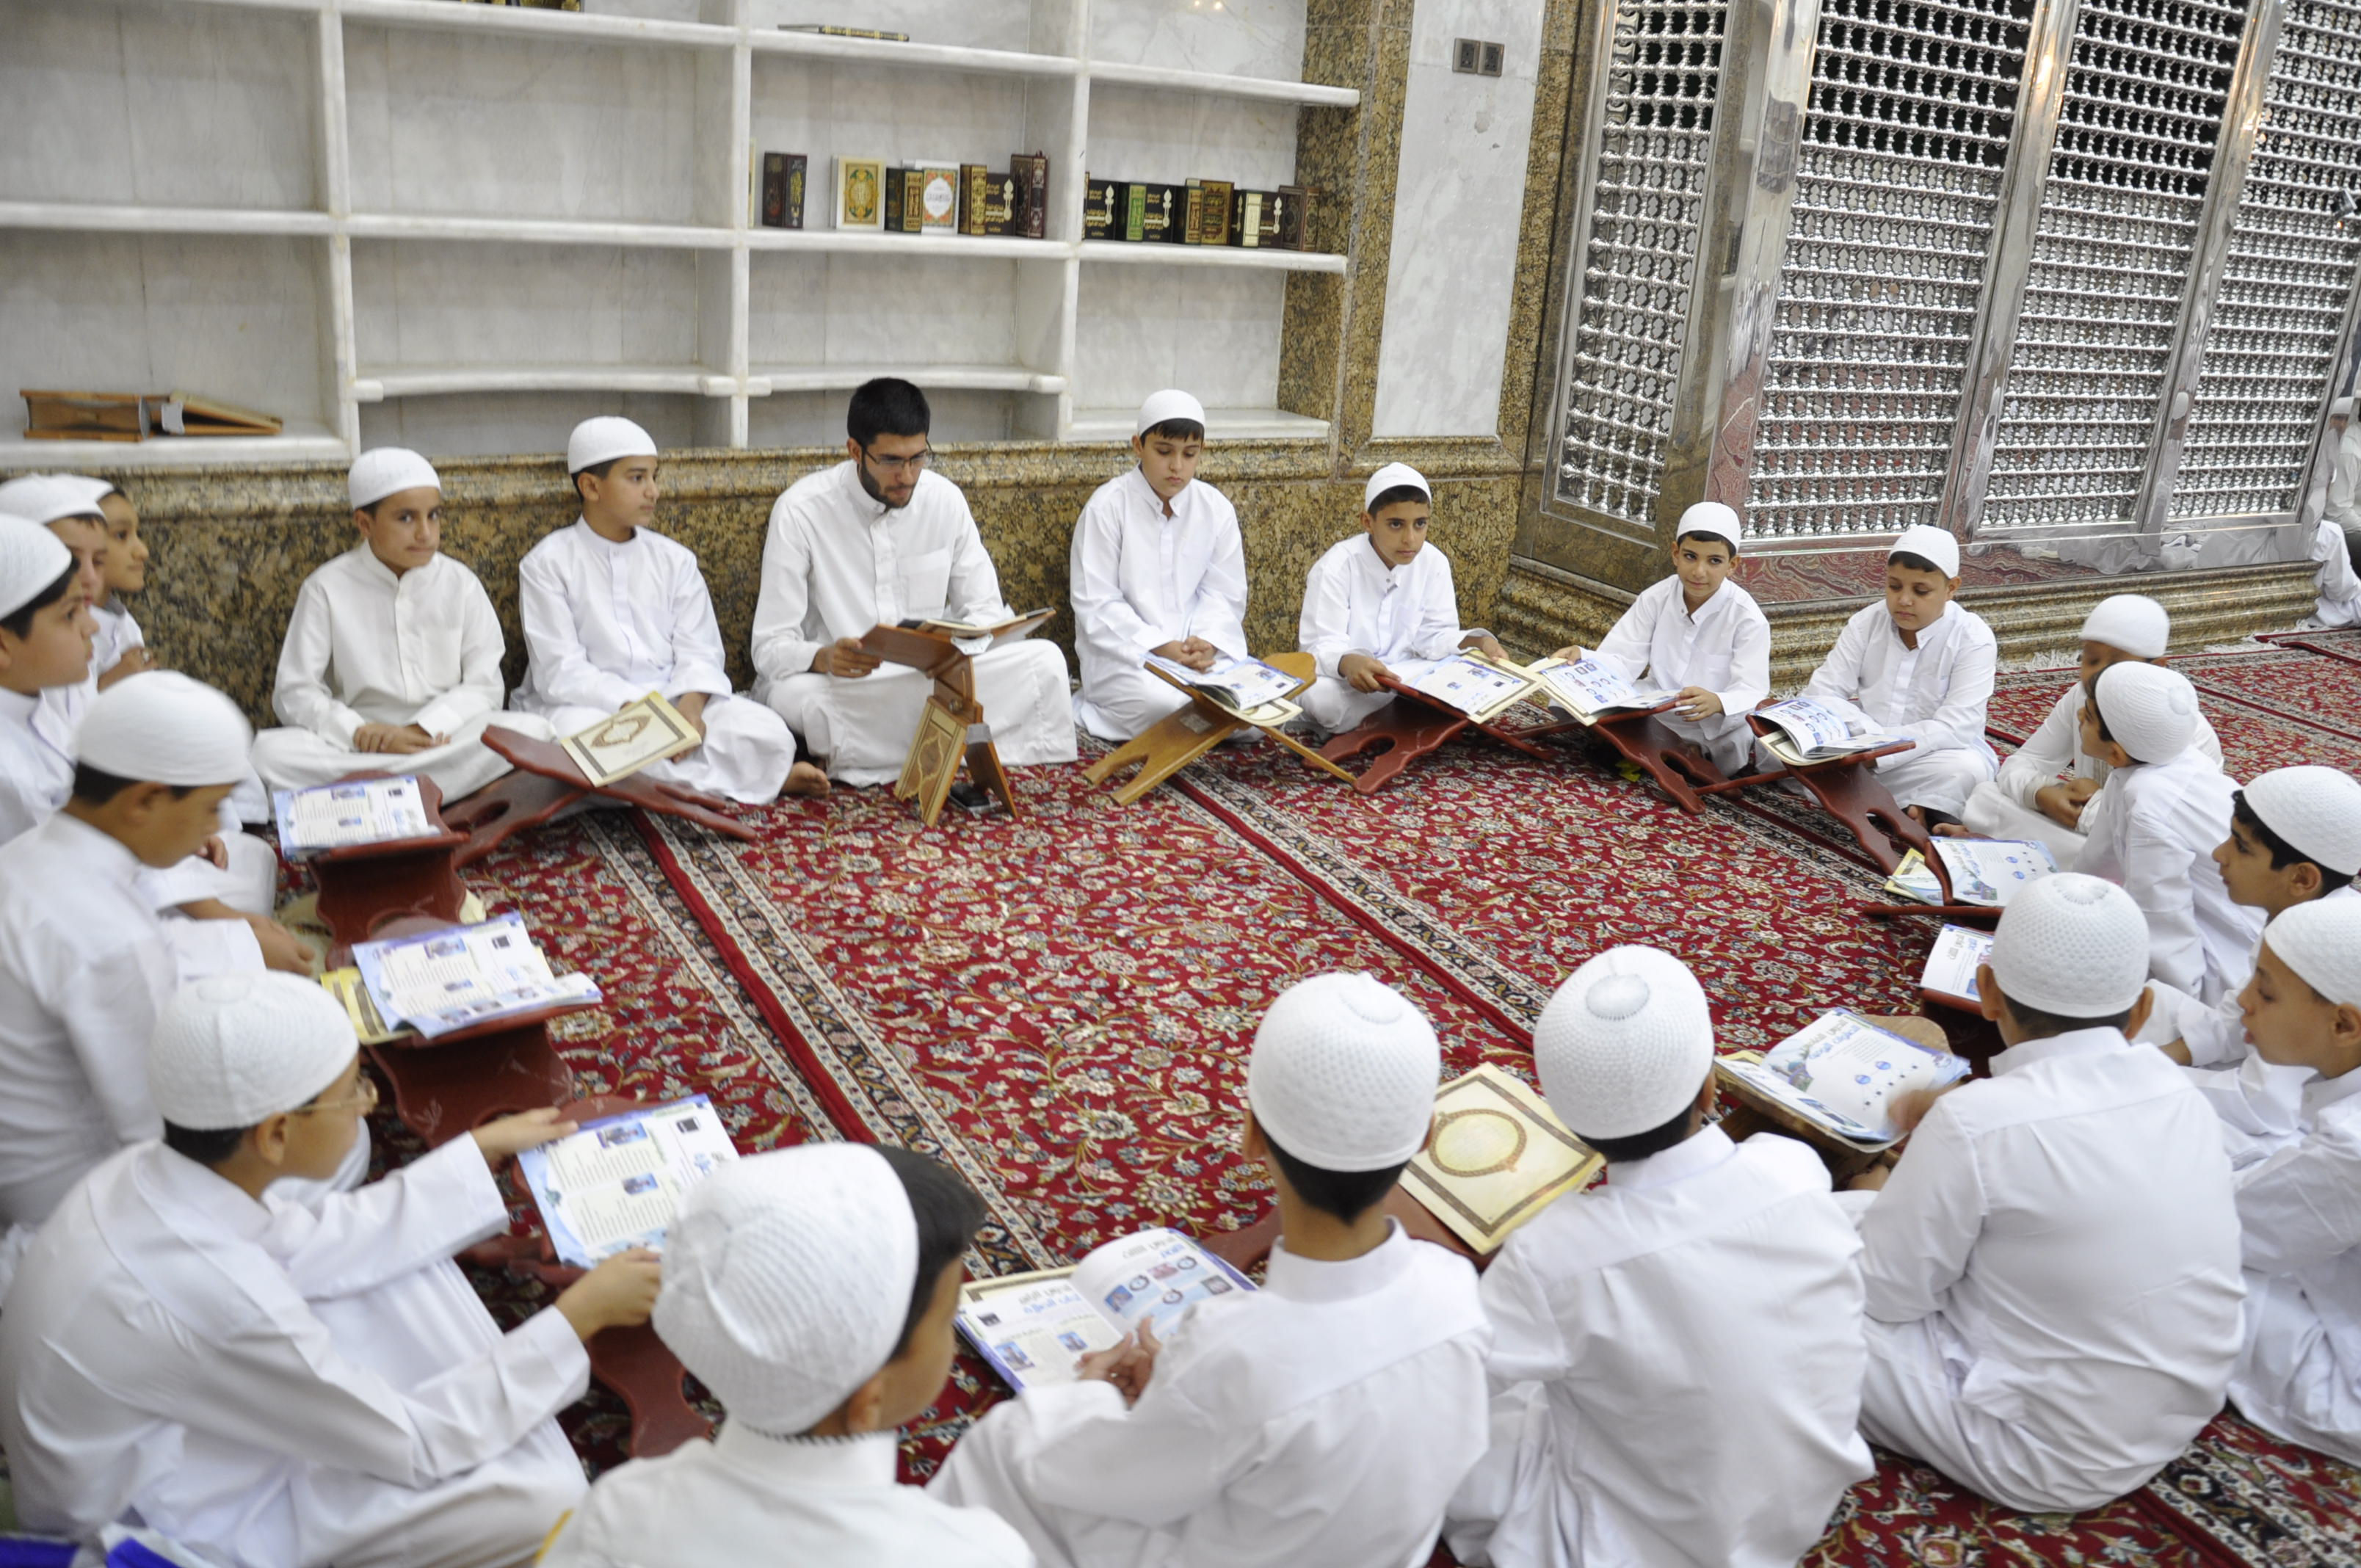 آموزش دین به کودکان و نوجوانان در عراق